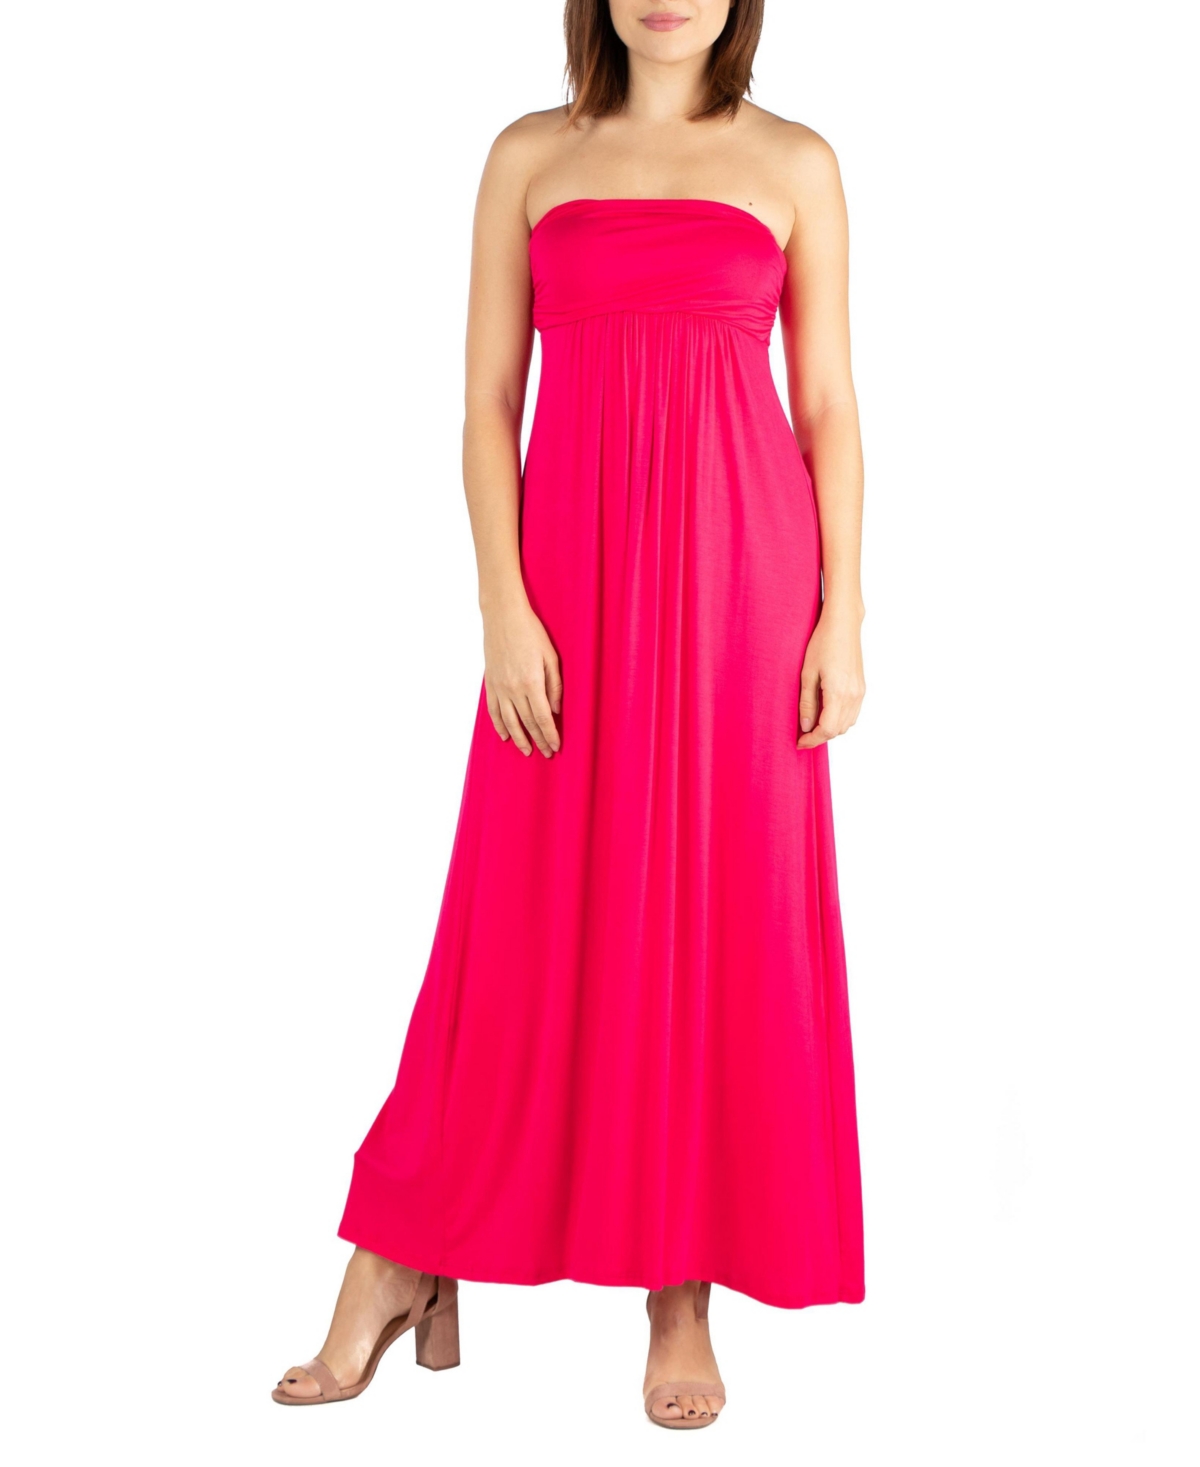 Women's Strapless Empire Waist Maxi Dress - Pink